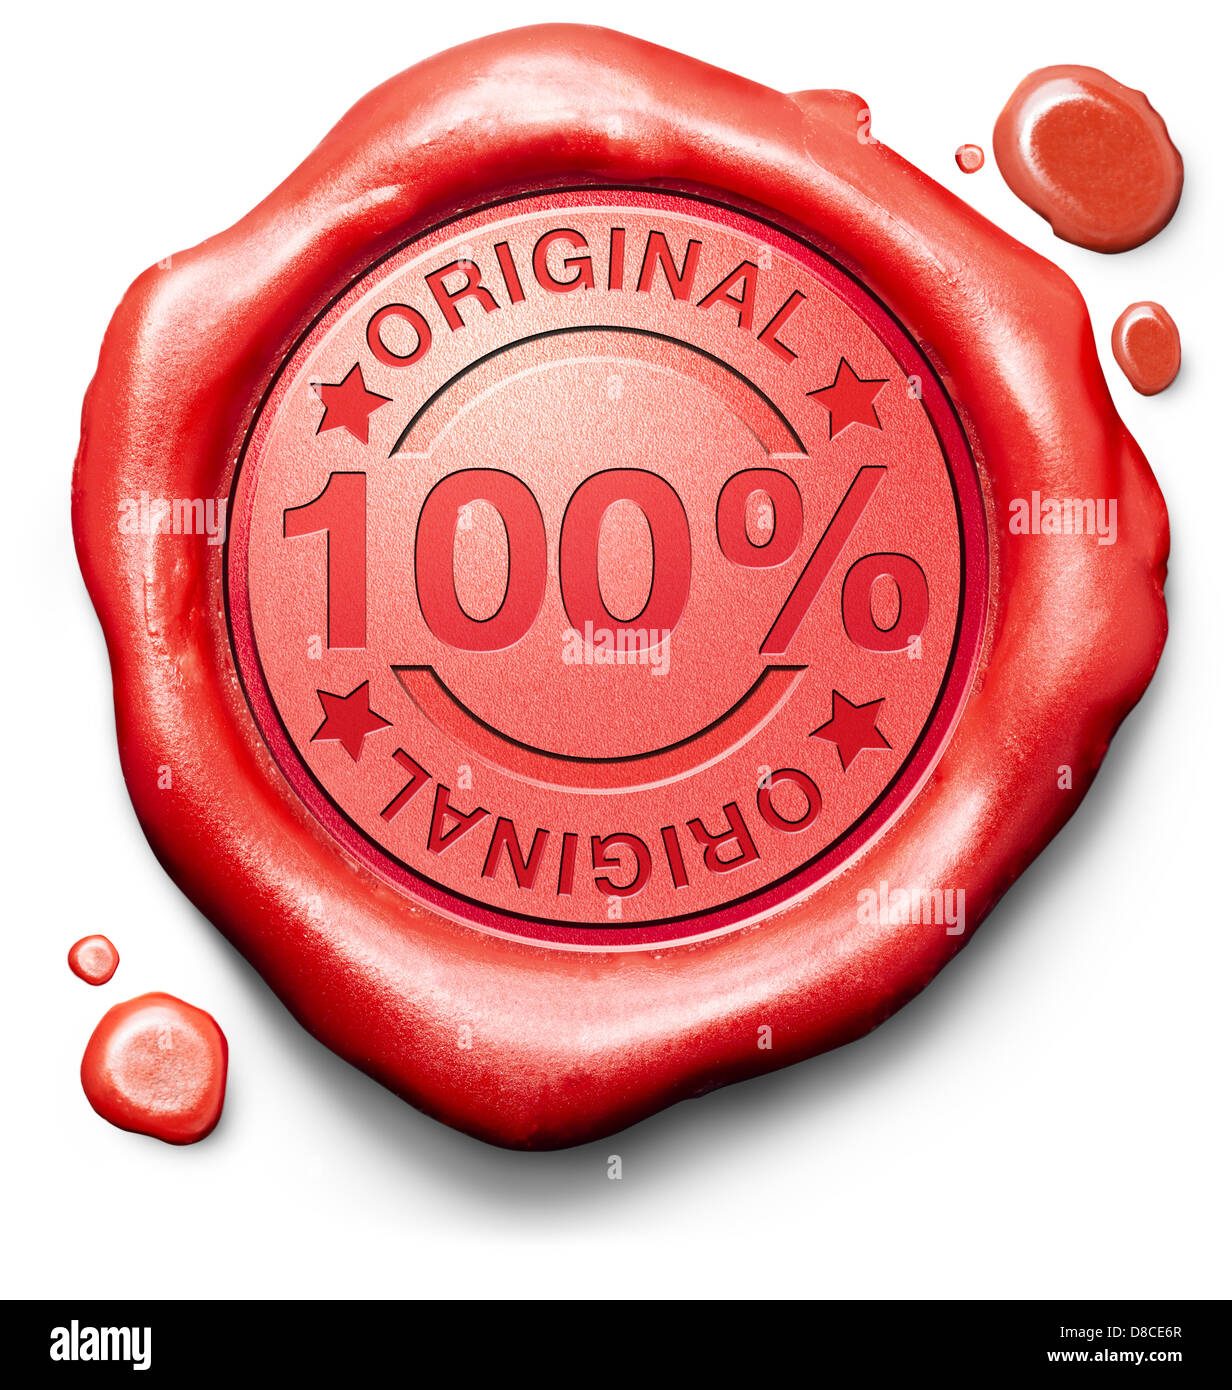 Originale di autentica il contenuto o la qualità dei prodotti label autenticità garantita 100% originalità nuova innovazione sigillo di cera rossa timbro Foto Stock